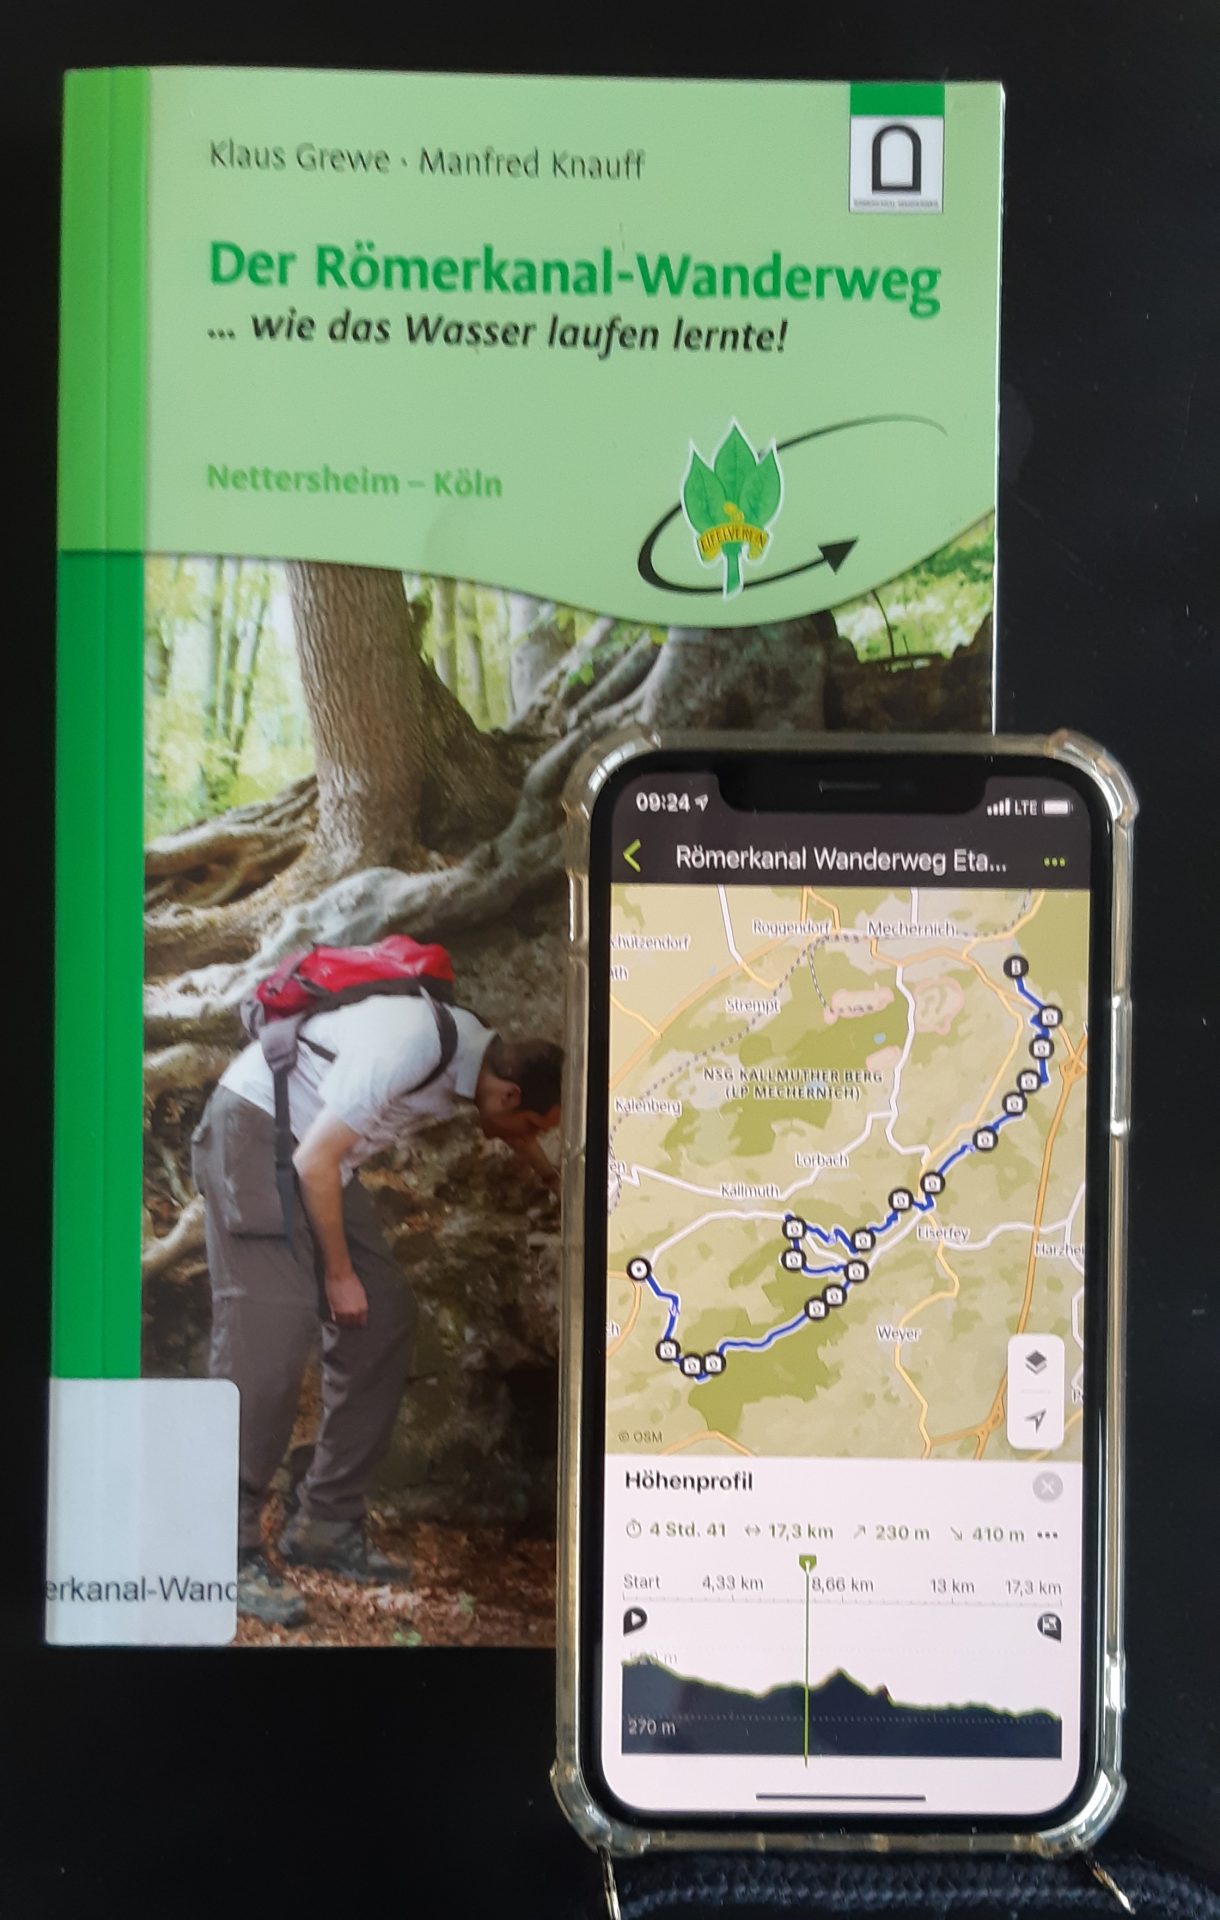 Buch "Der Römerkanal-Wanderweg" und Handy mit geöffneter Komoot-App